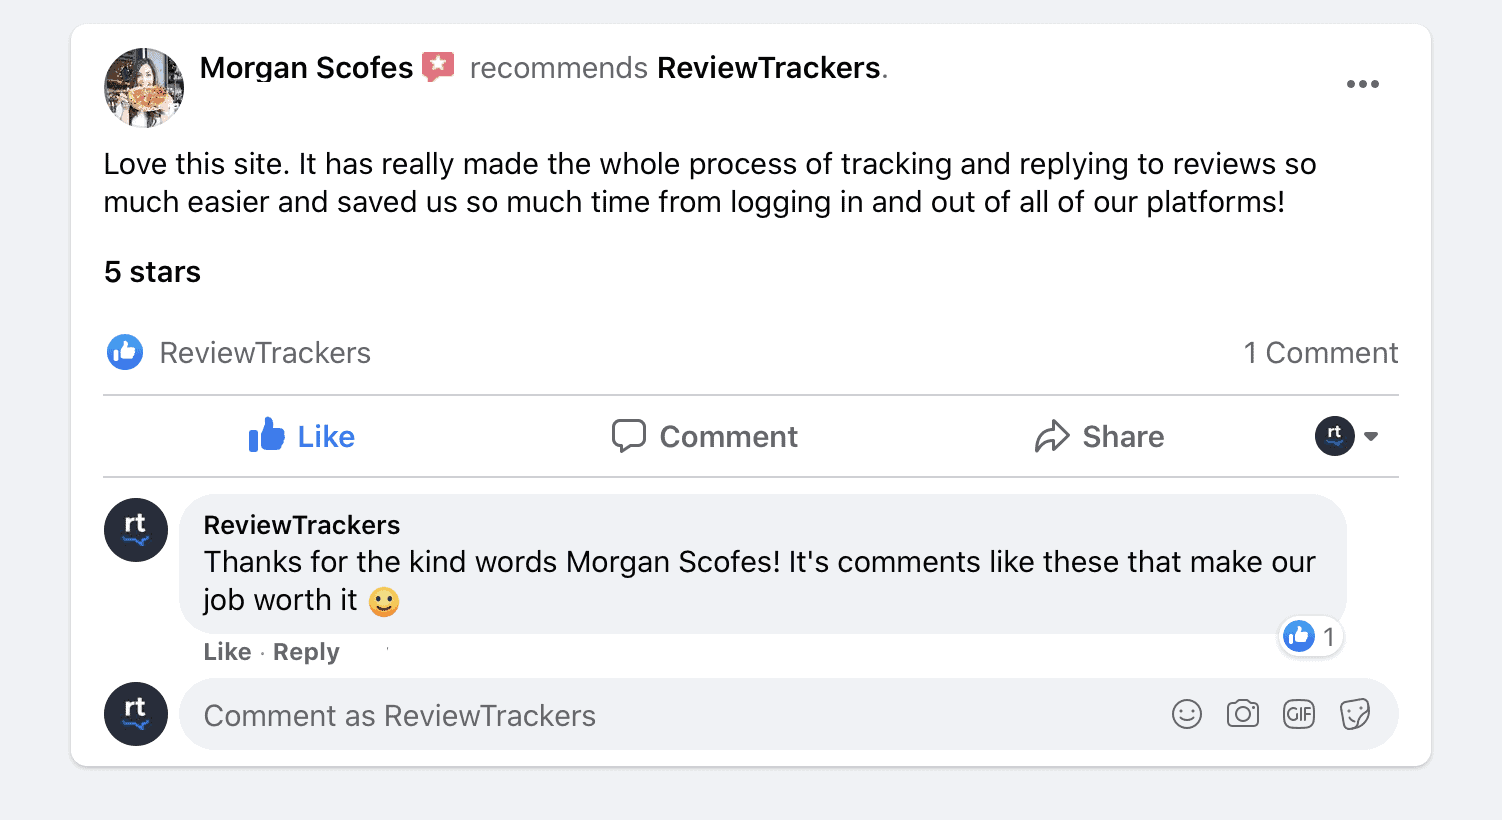 Ein Beispiel für eine Empfehlung auf Facebook und der Unternehmensseite